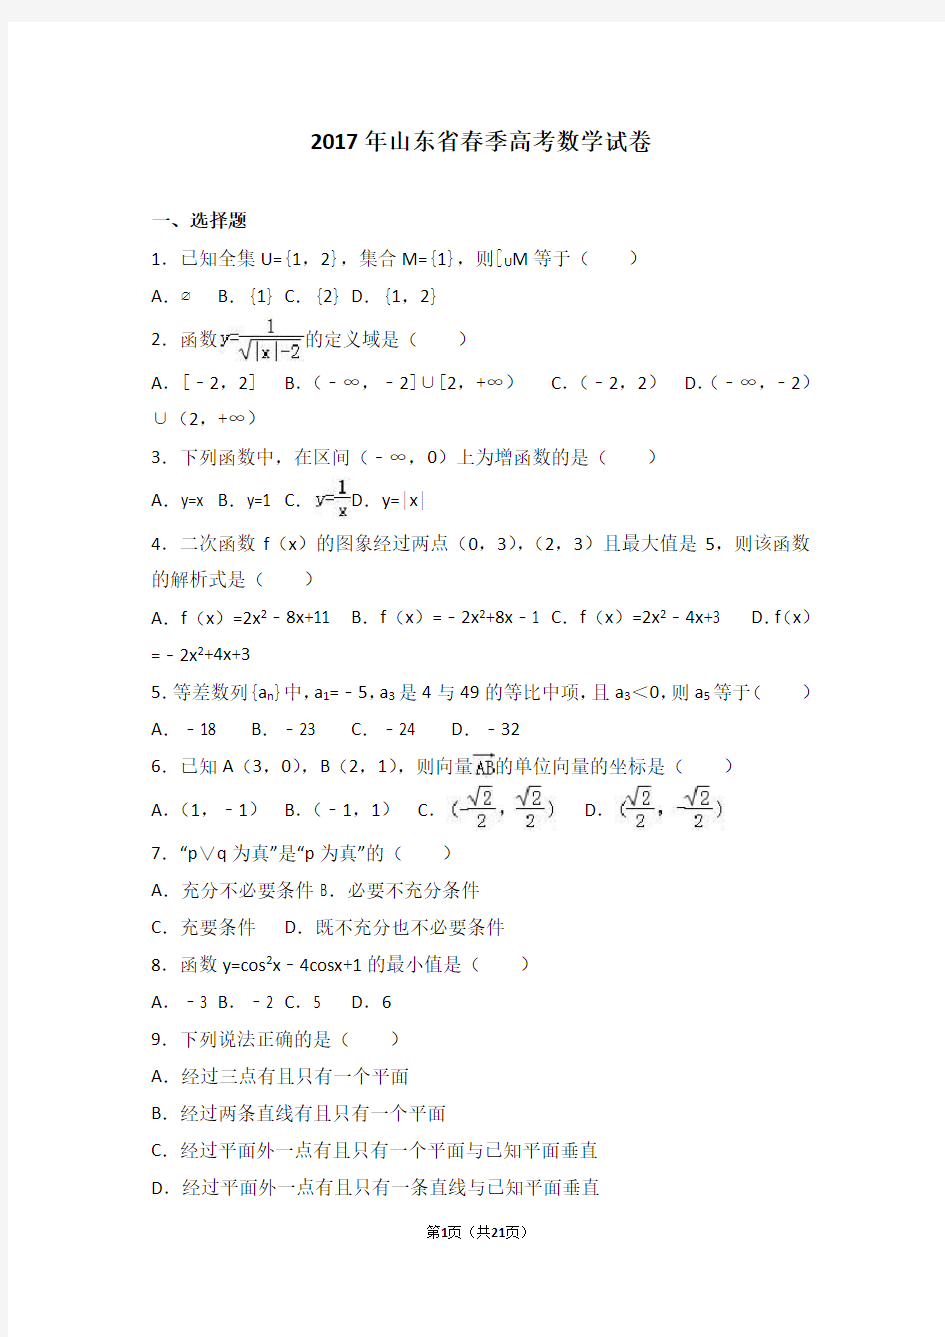 (完整版)2017年山东省春季高考数学试卷(解析版)